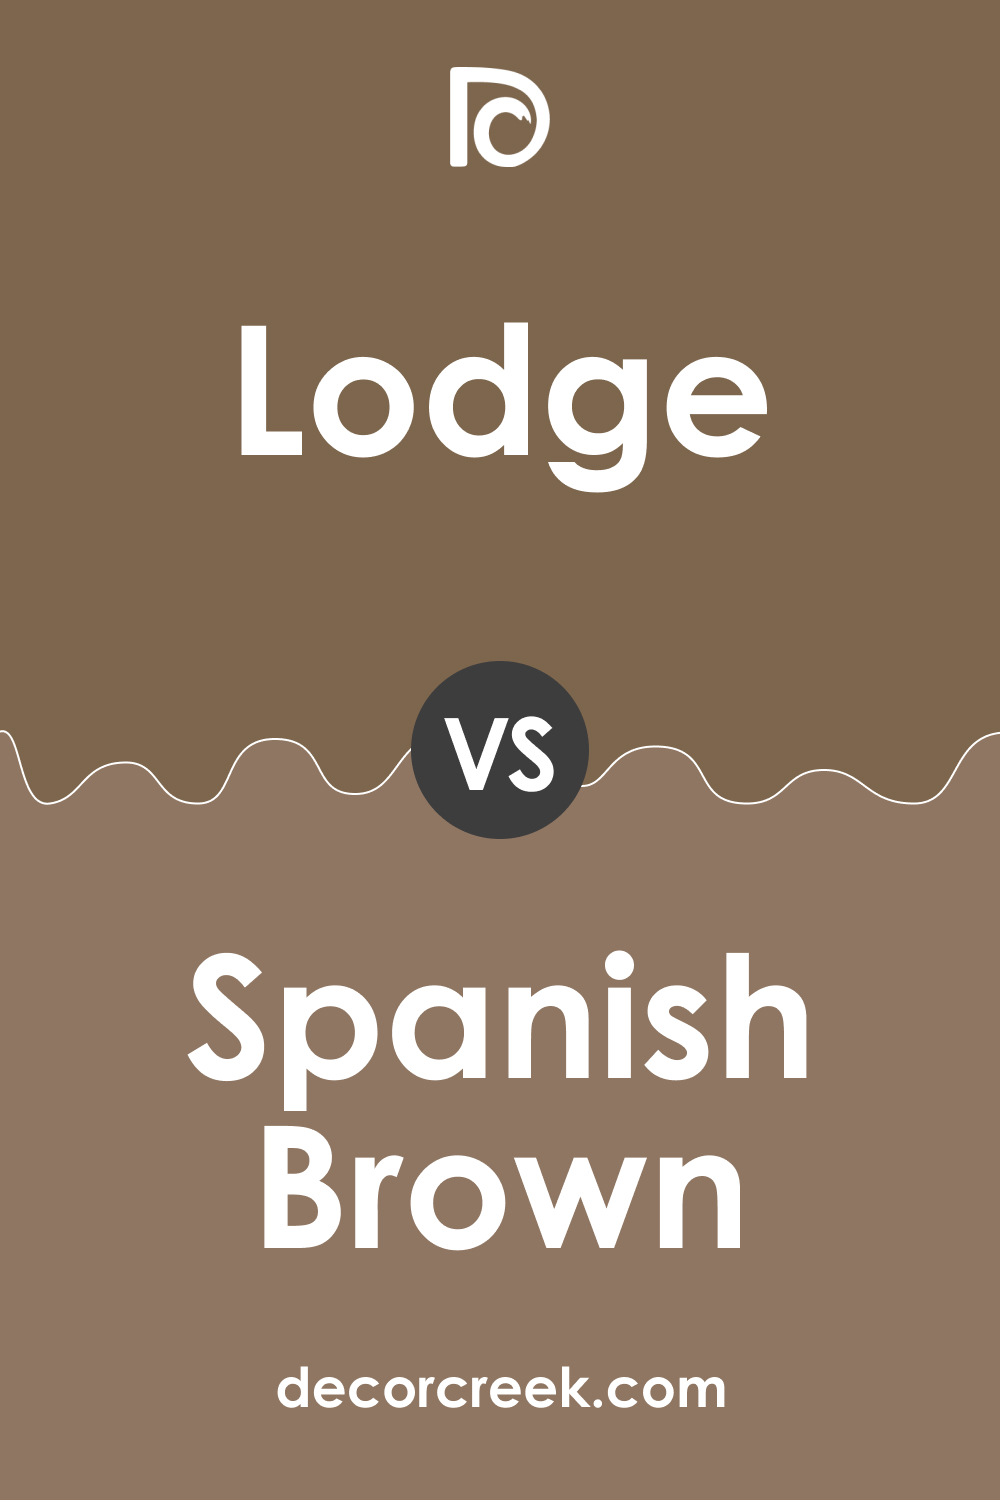 Lodge AF-115 vs. BM 1028 Spanish Brown